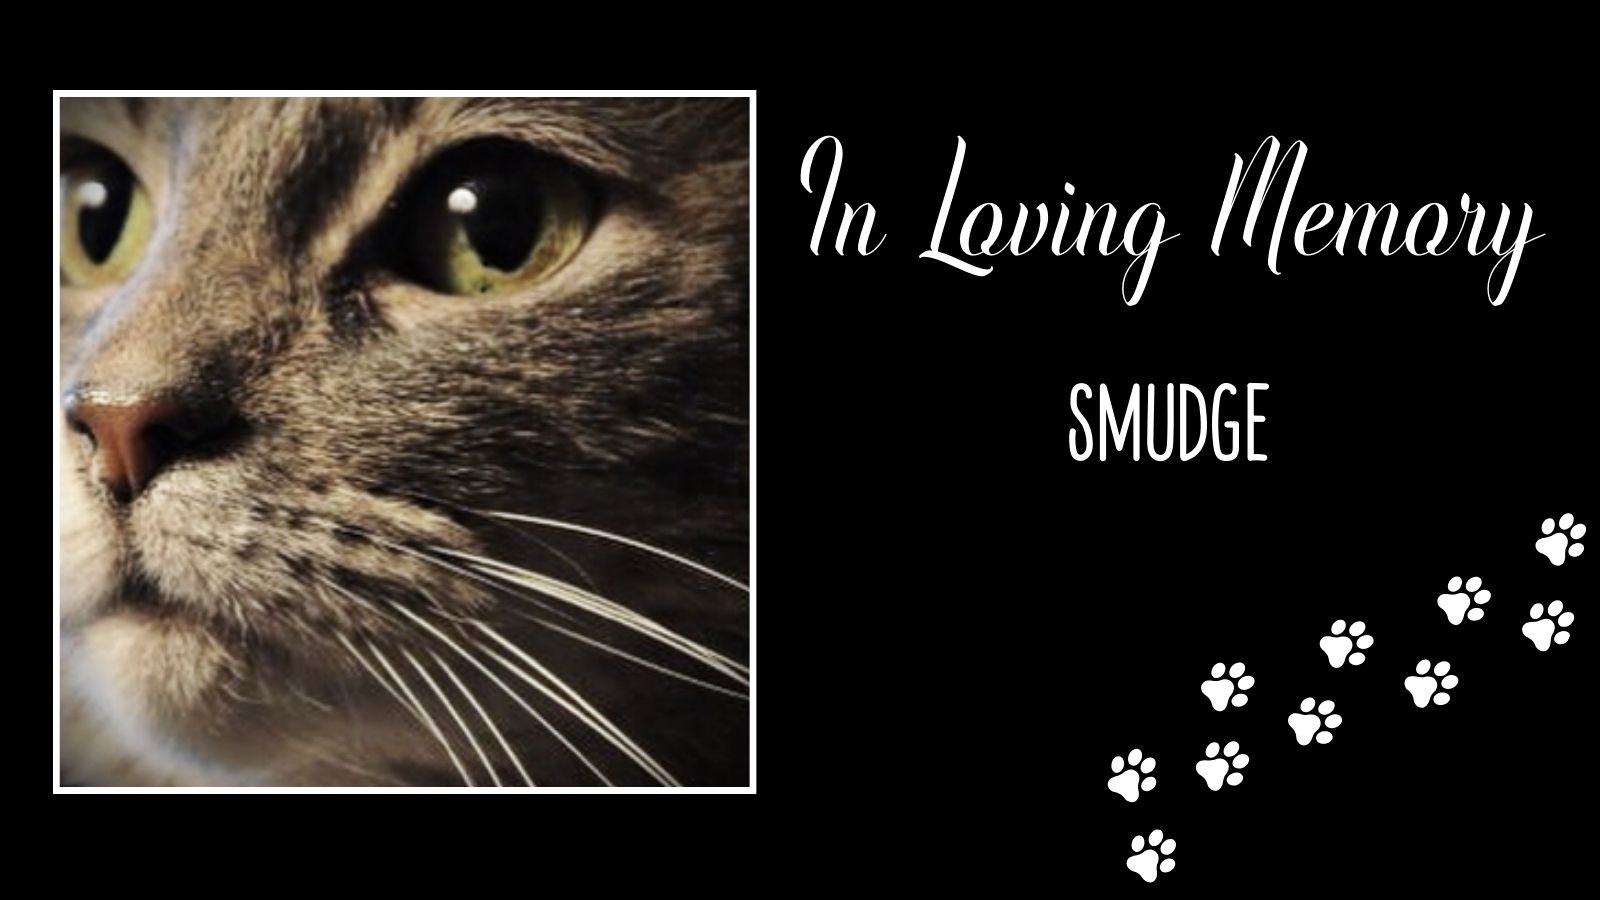 In Loving Memory of Smudge